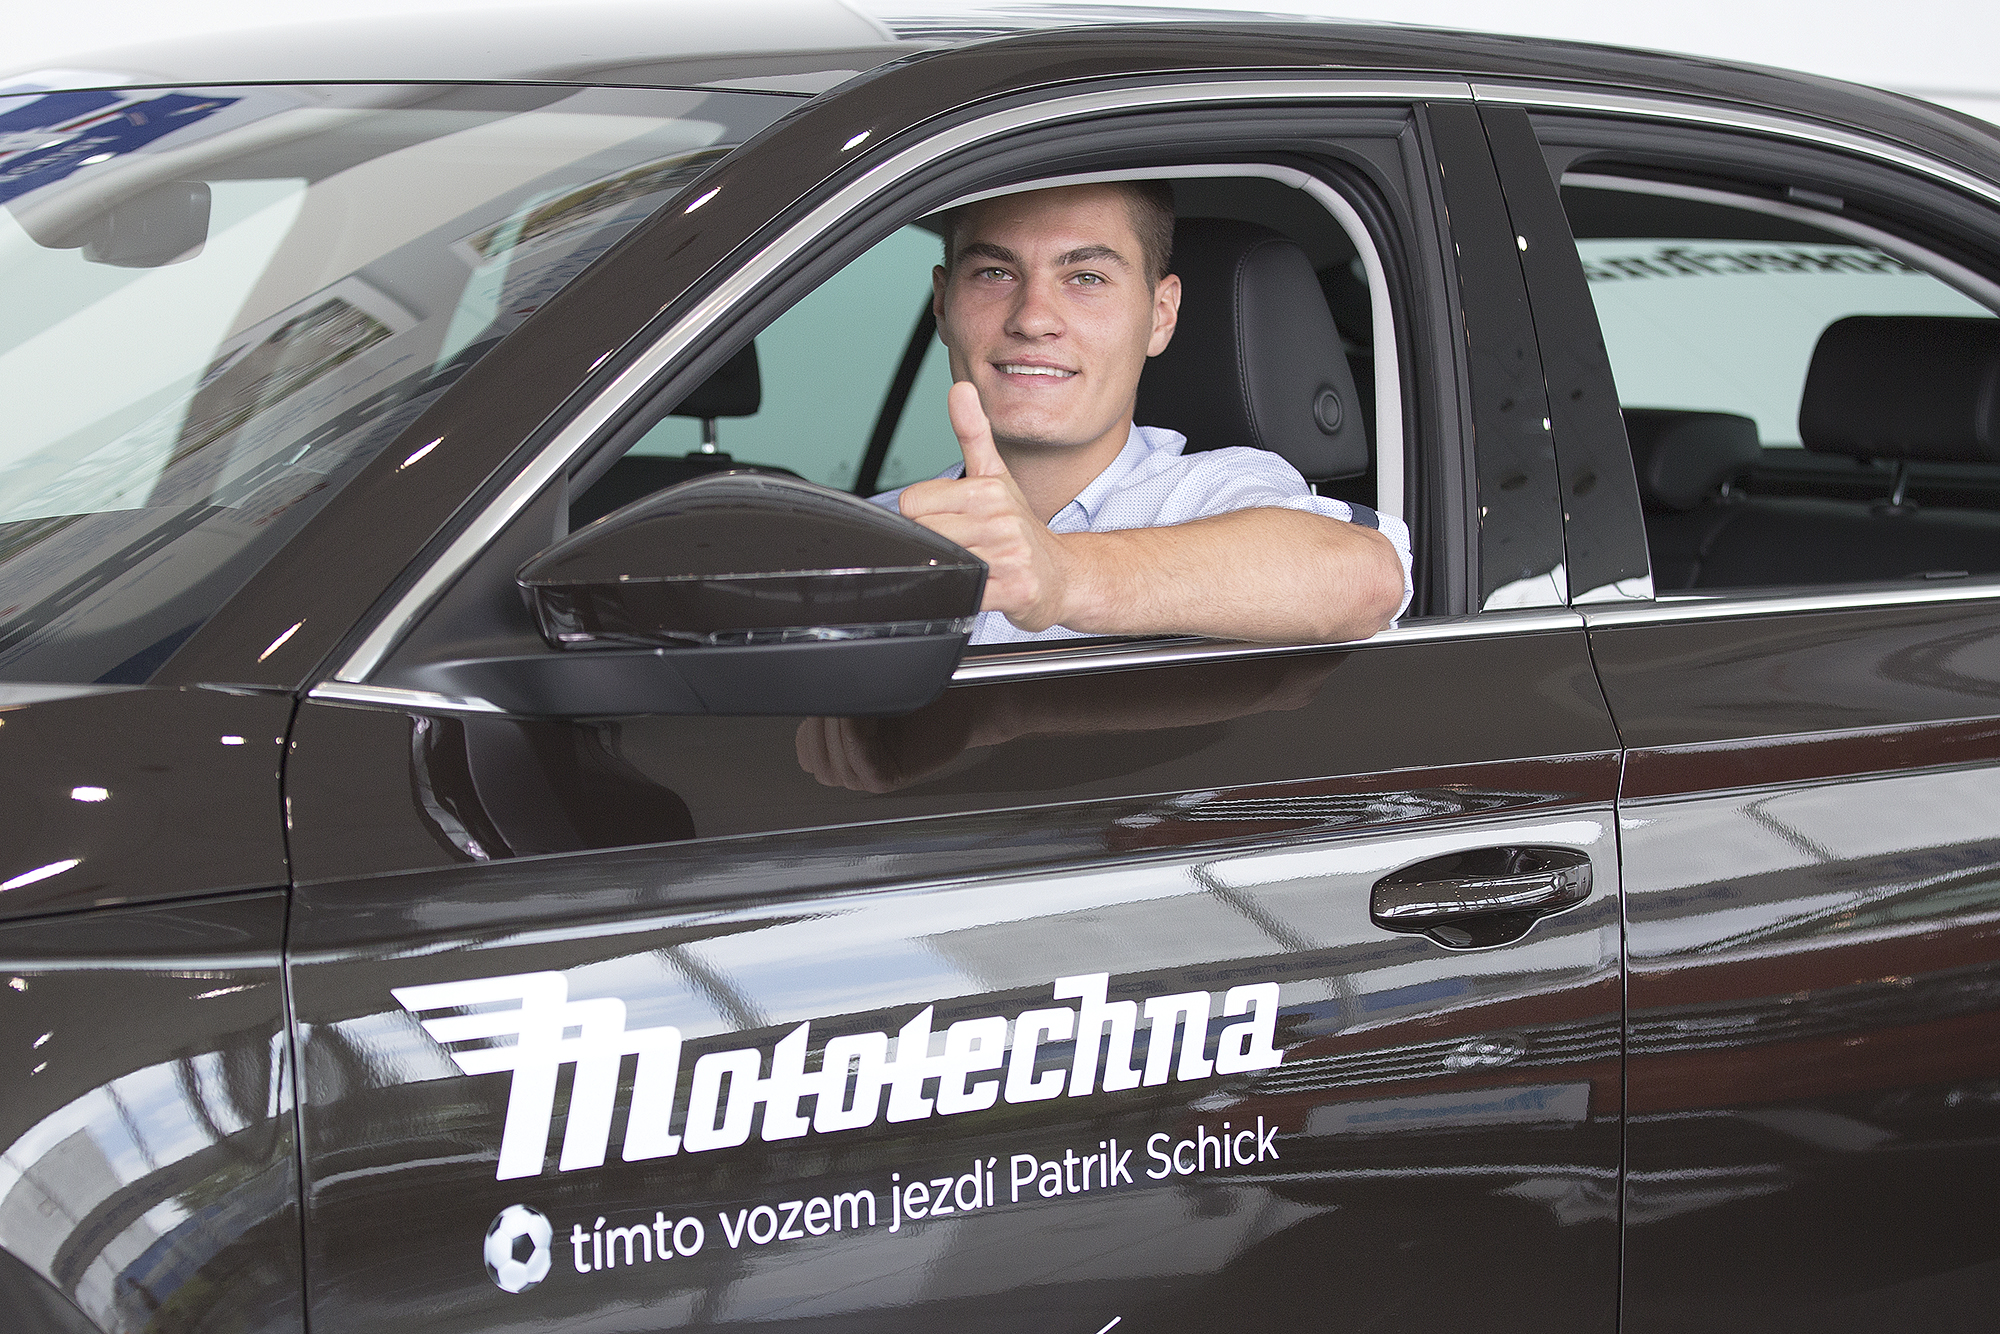 Patrik Schick v autě Mototechna